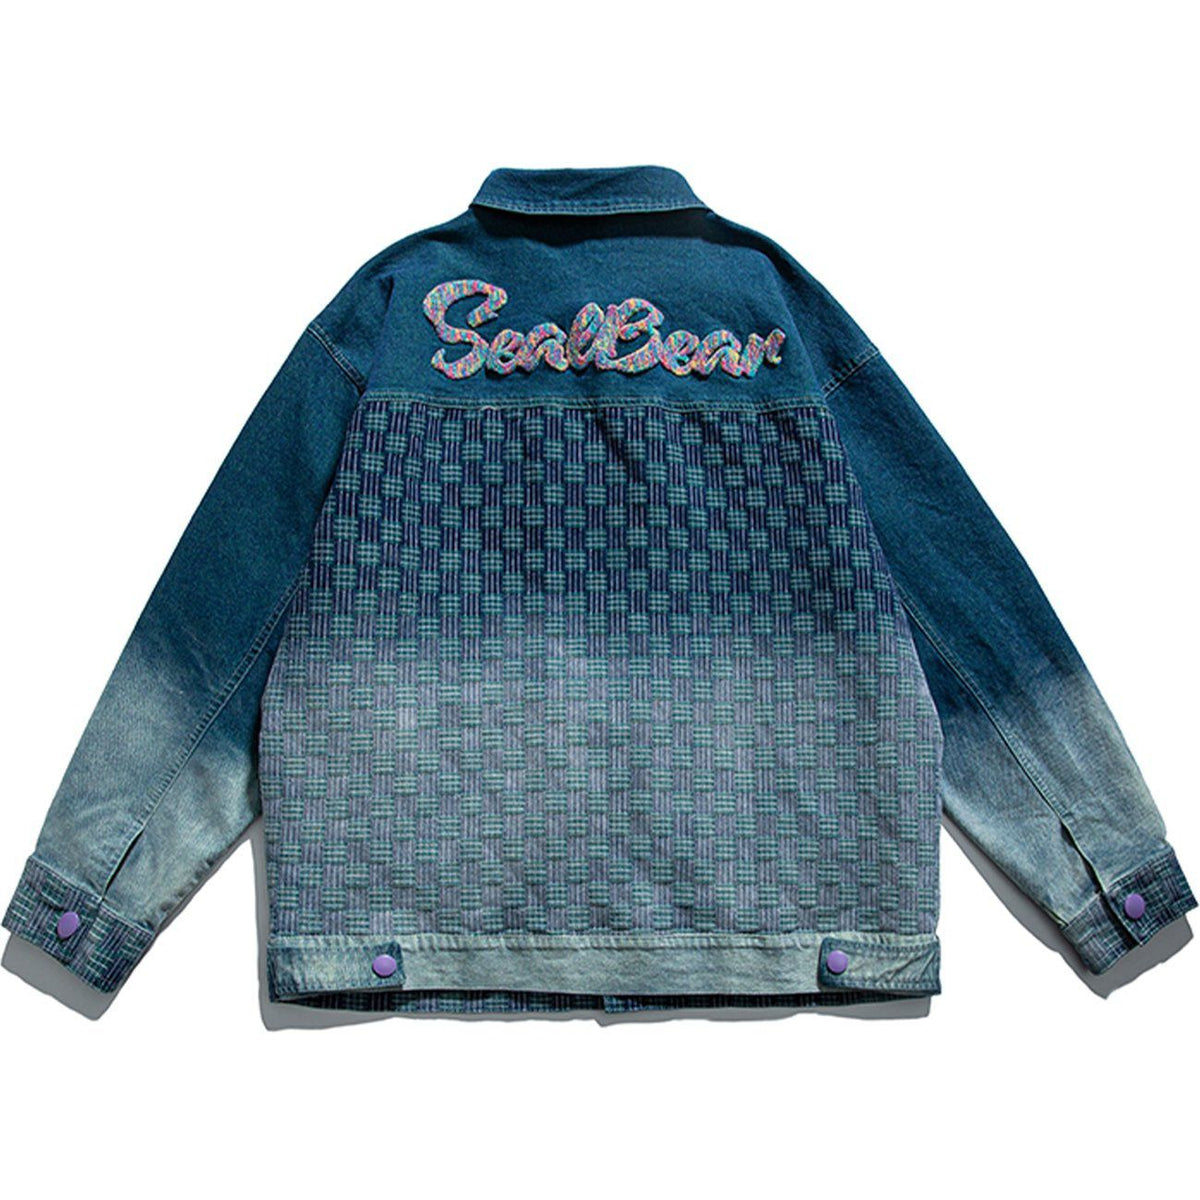 Eprezzy® - Labeled Gradient Denim Jacket Streetwear Fashion - eprezzy.com